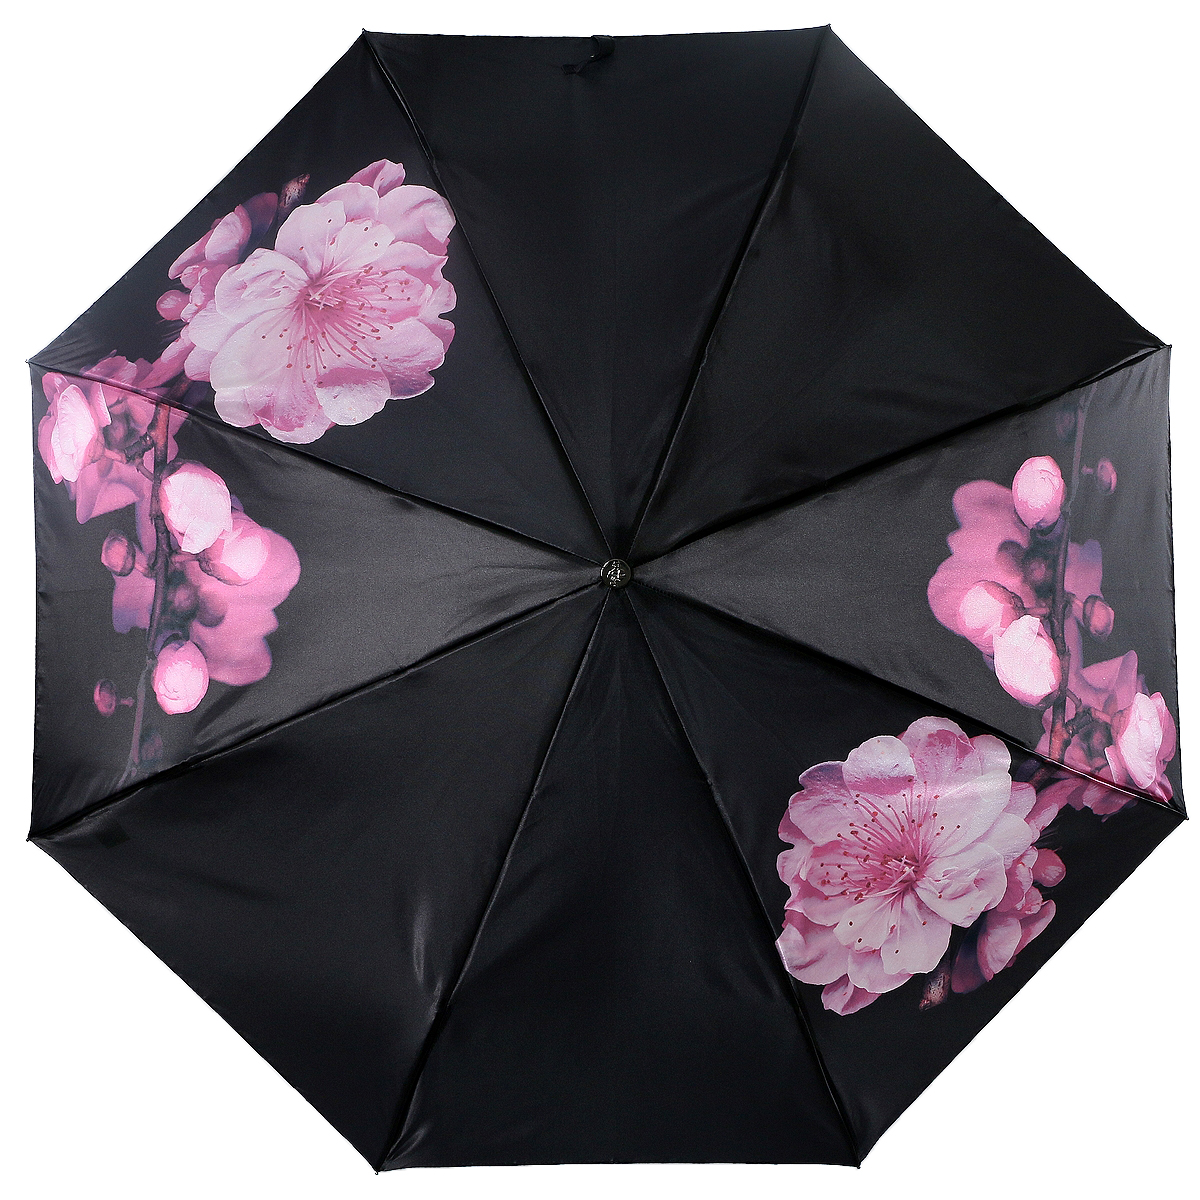 Купить зонт женский на озон. Зонт Trust 42372-15, женский. Зонт фирмы Trust артикул 30472. Женский зонт Trust FASMI-21lux-06. Japan Pat 124153 зонт.